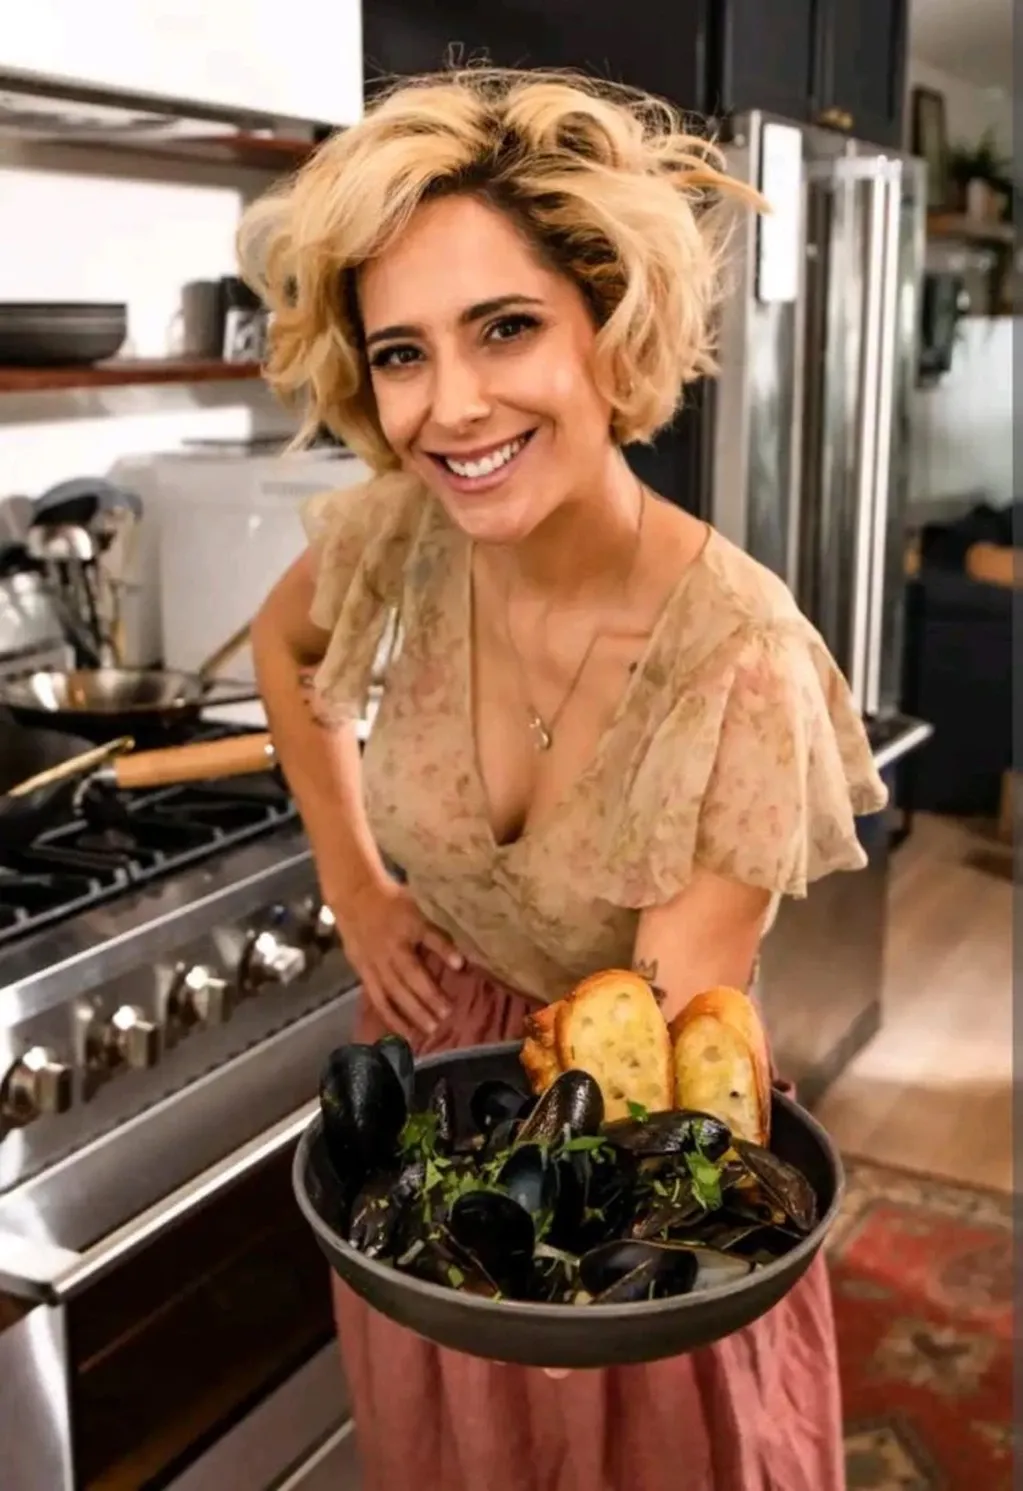 Victoria Vannucci ofrece sus servicios de chef personal en Airbnb